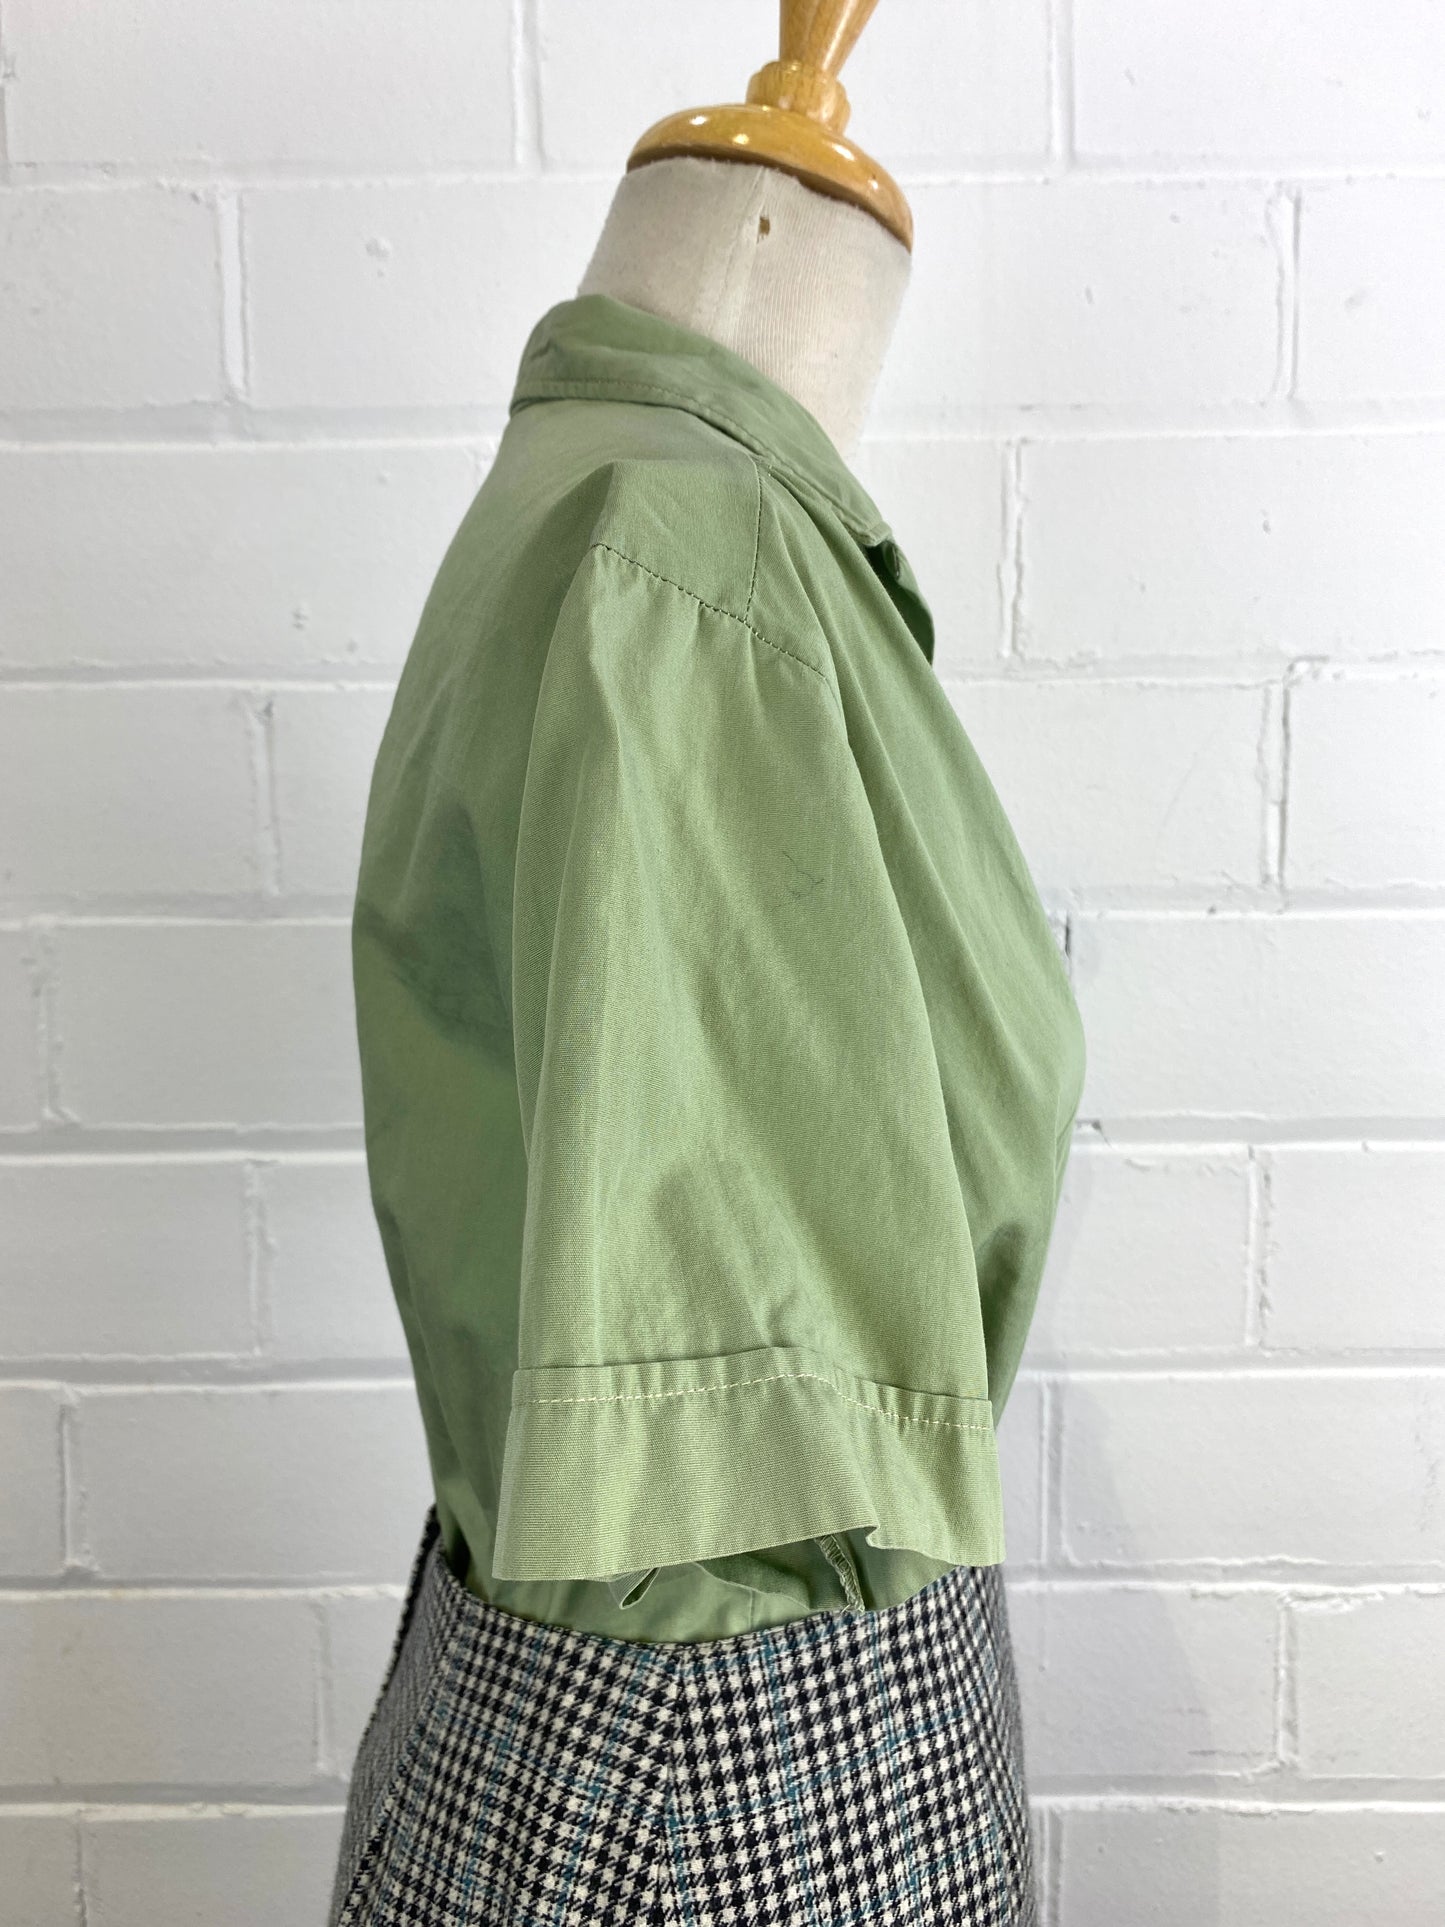 Vintage 1950s Green Cotton Blouse, Large 